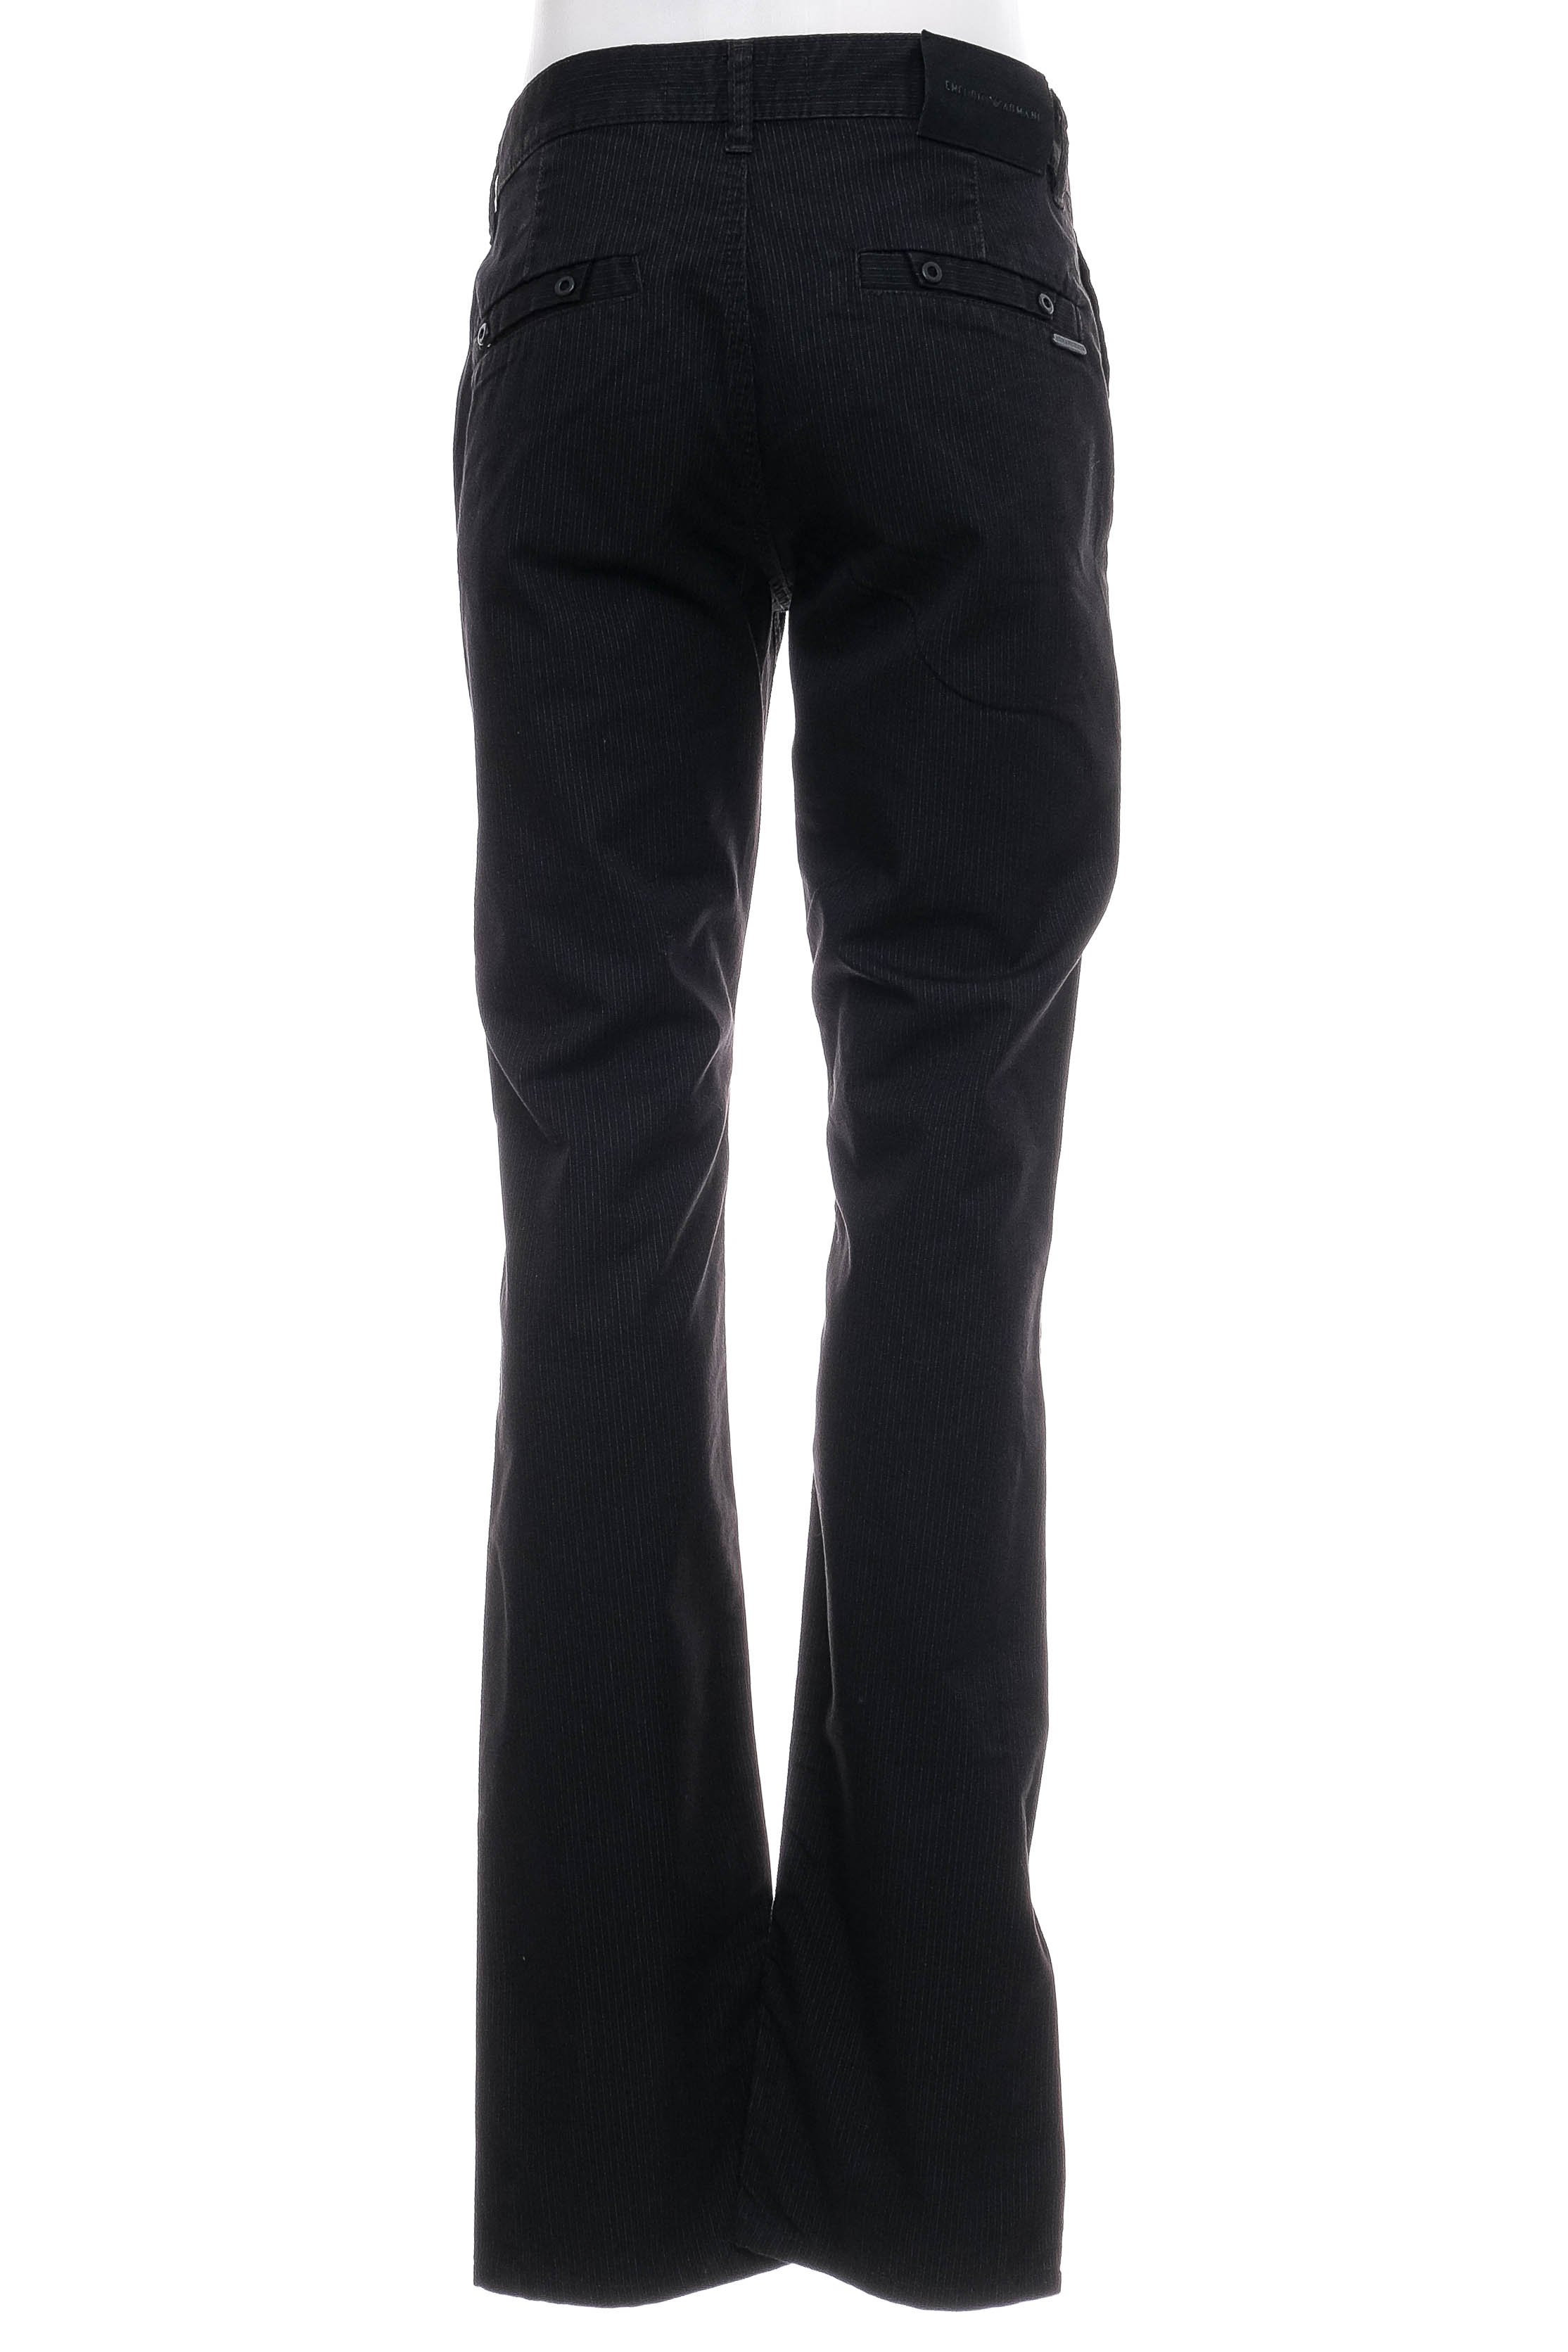 Pantalon pentru bărbați - Armani Jeans - 1